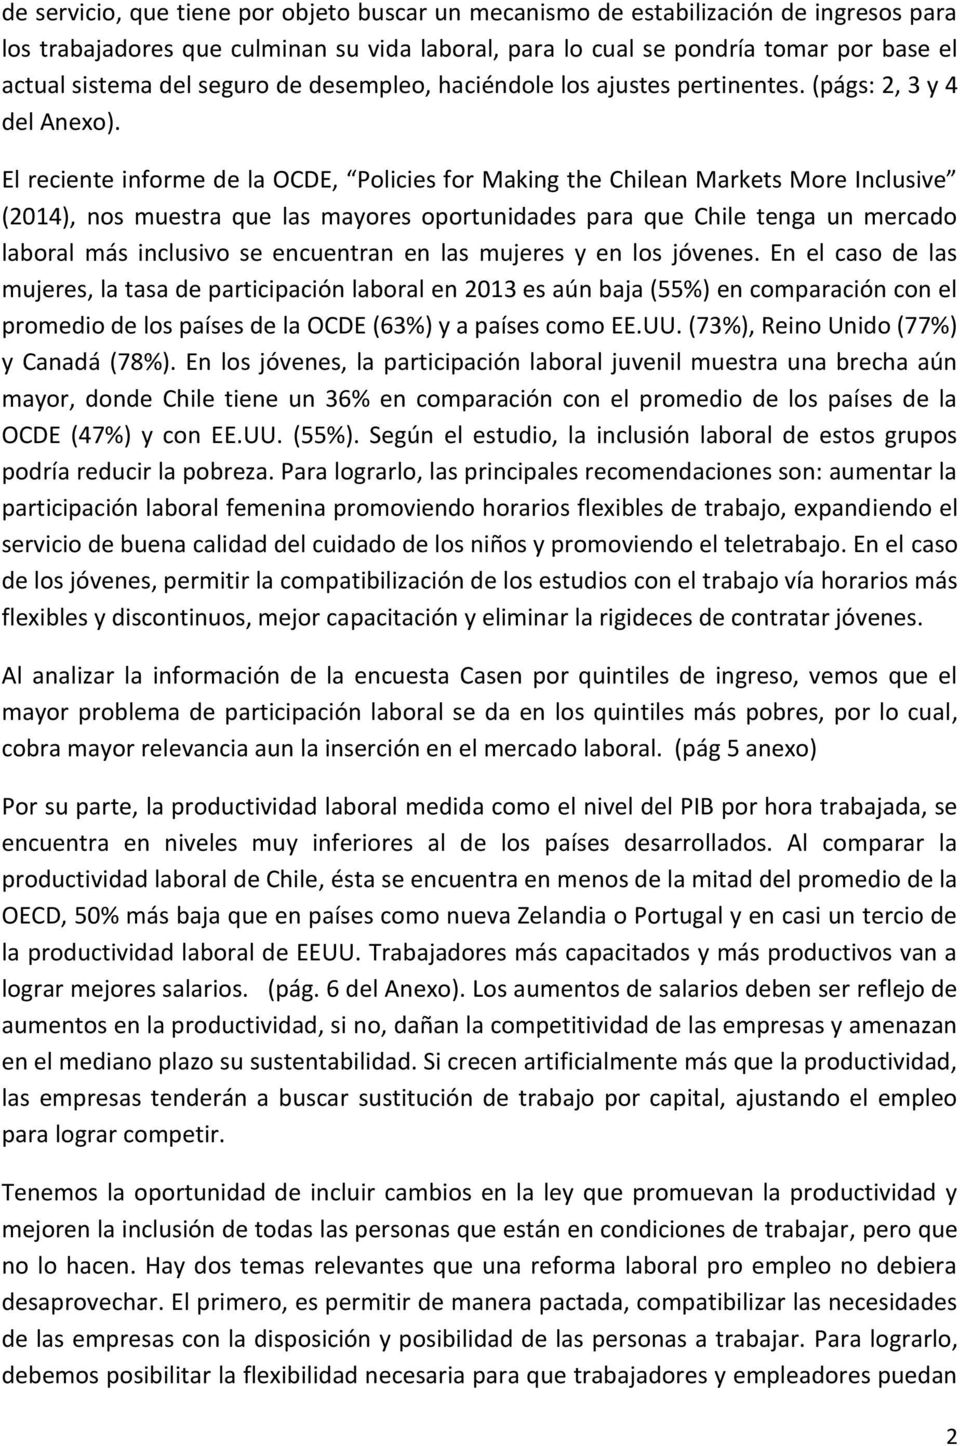 El reciente informe de la OCDE, Policies for Making the Chilean Markets More Inclusive (2014), nos muestra que las mayores oportunidades para que Chile tenga un mercado laboral más inclusivo se